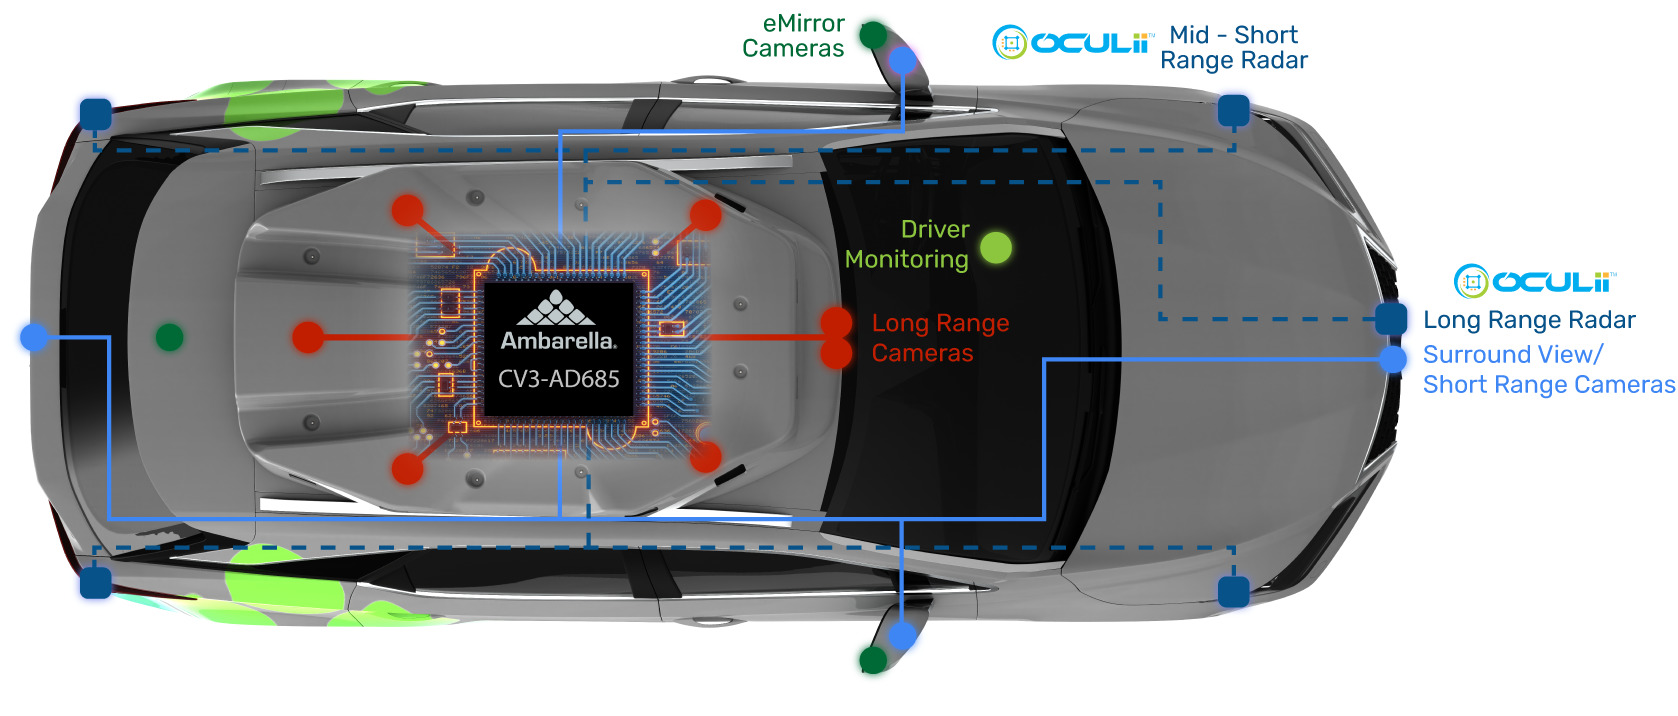 Ambarella ha recentemente introdotto CV3-AD685, la prima versione di produzione della famiglia CV3 di controller di dominio AI per il settore automobilistico, destinati ai veicoli autonomi da L2+ a L4.